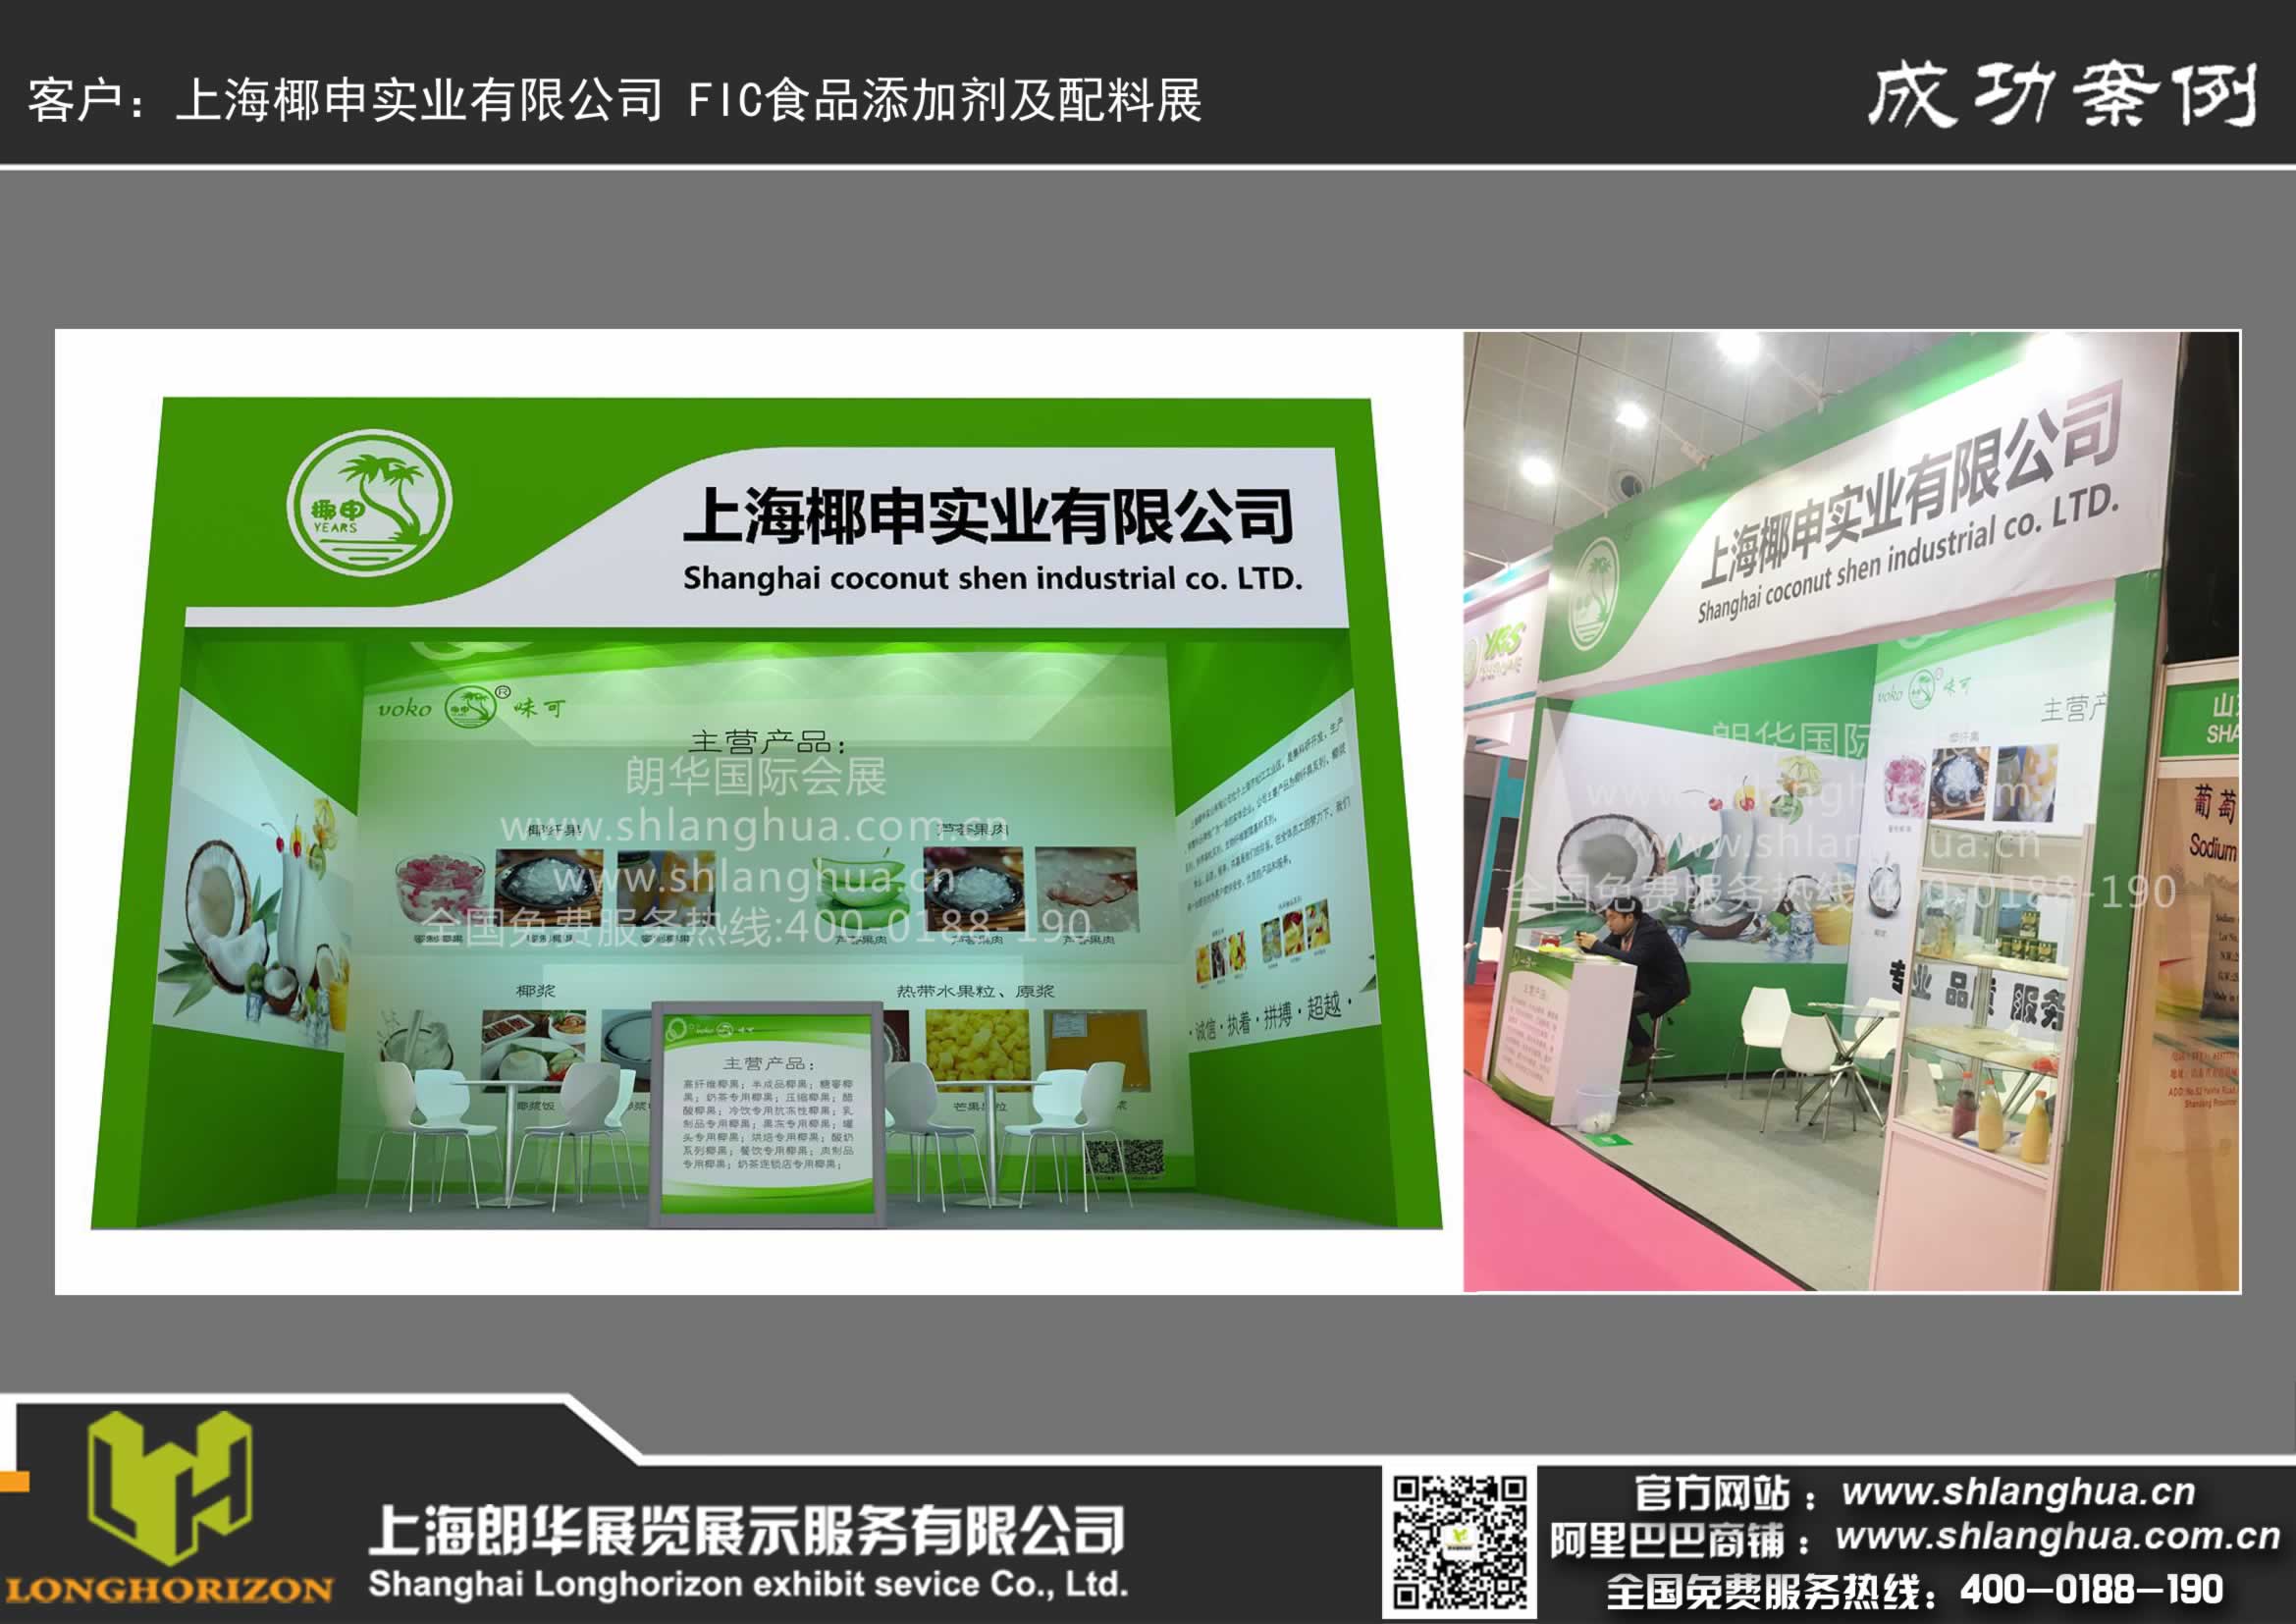 上海椰申实业有限公司 FIC食品添加剂及配料展